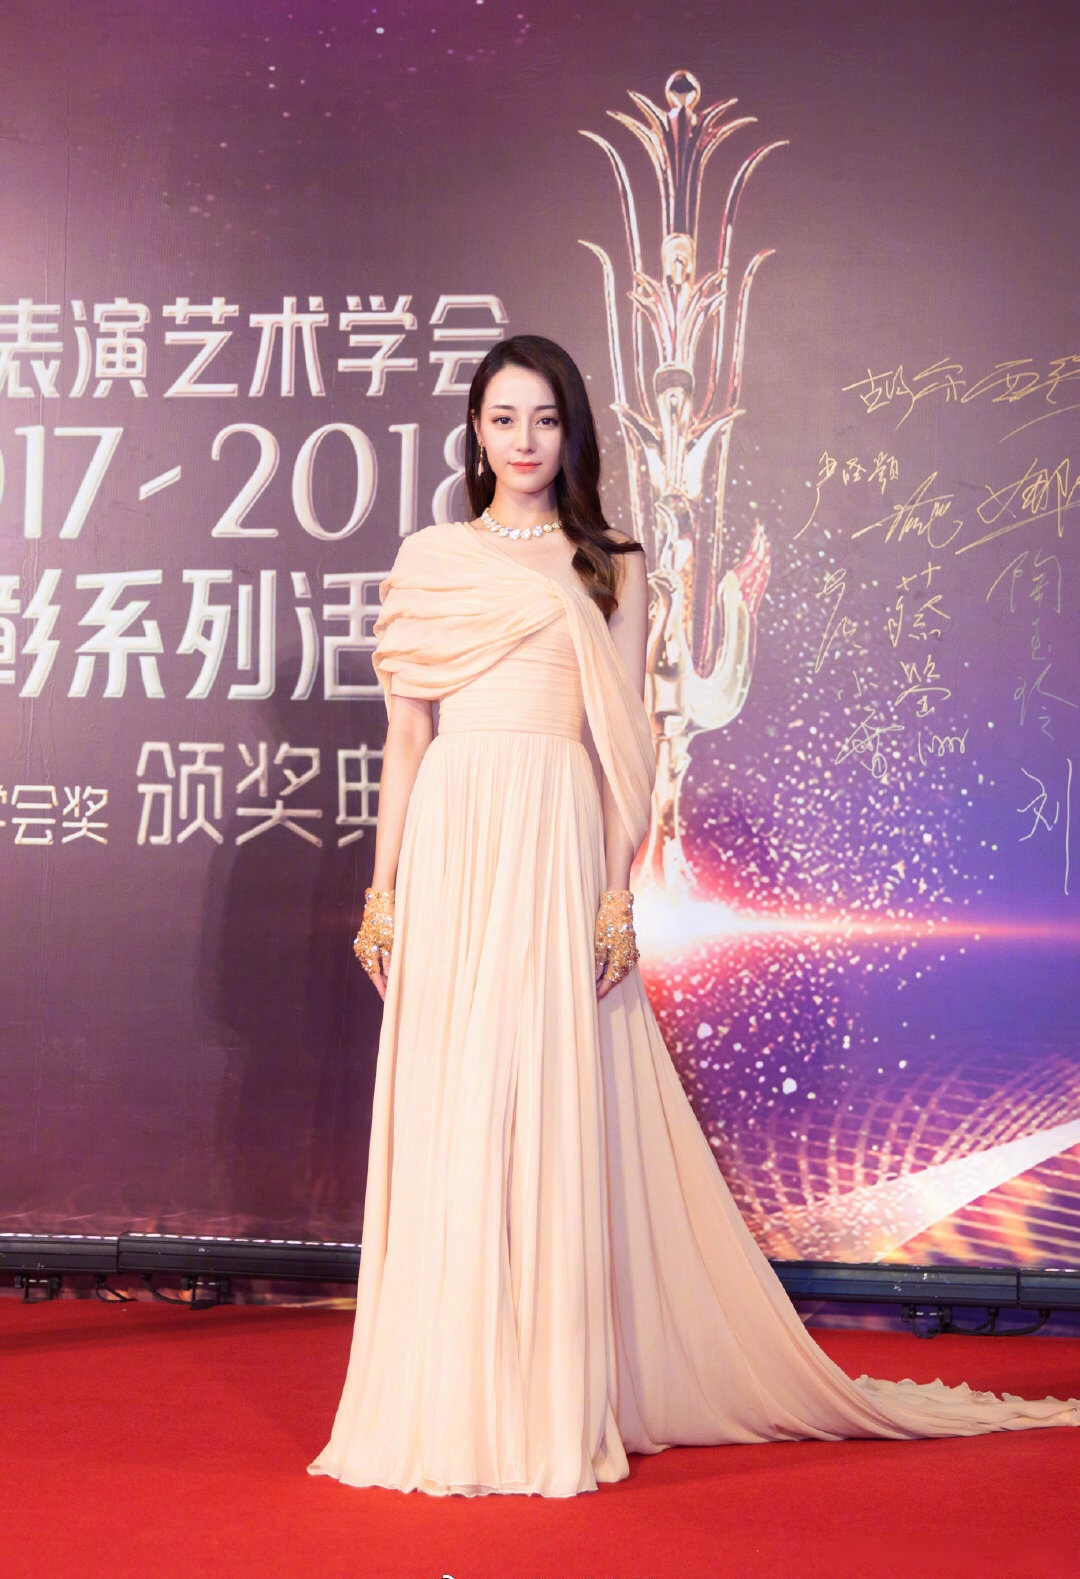 迪丽热巴亮相第十七届电影表演艺术学会奖颁奖典礼,不管穿什么裙子也